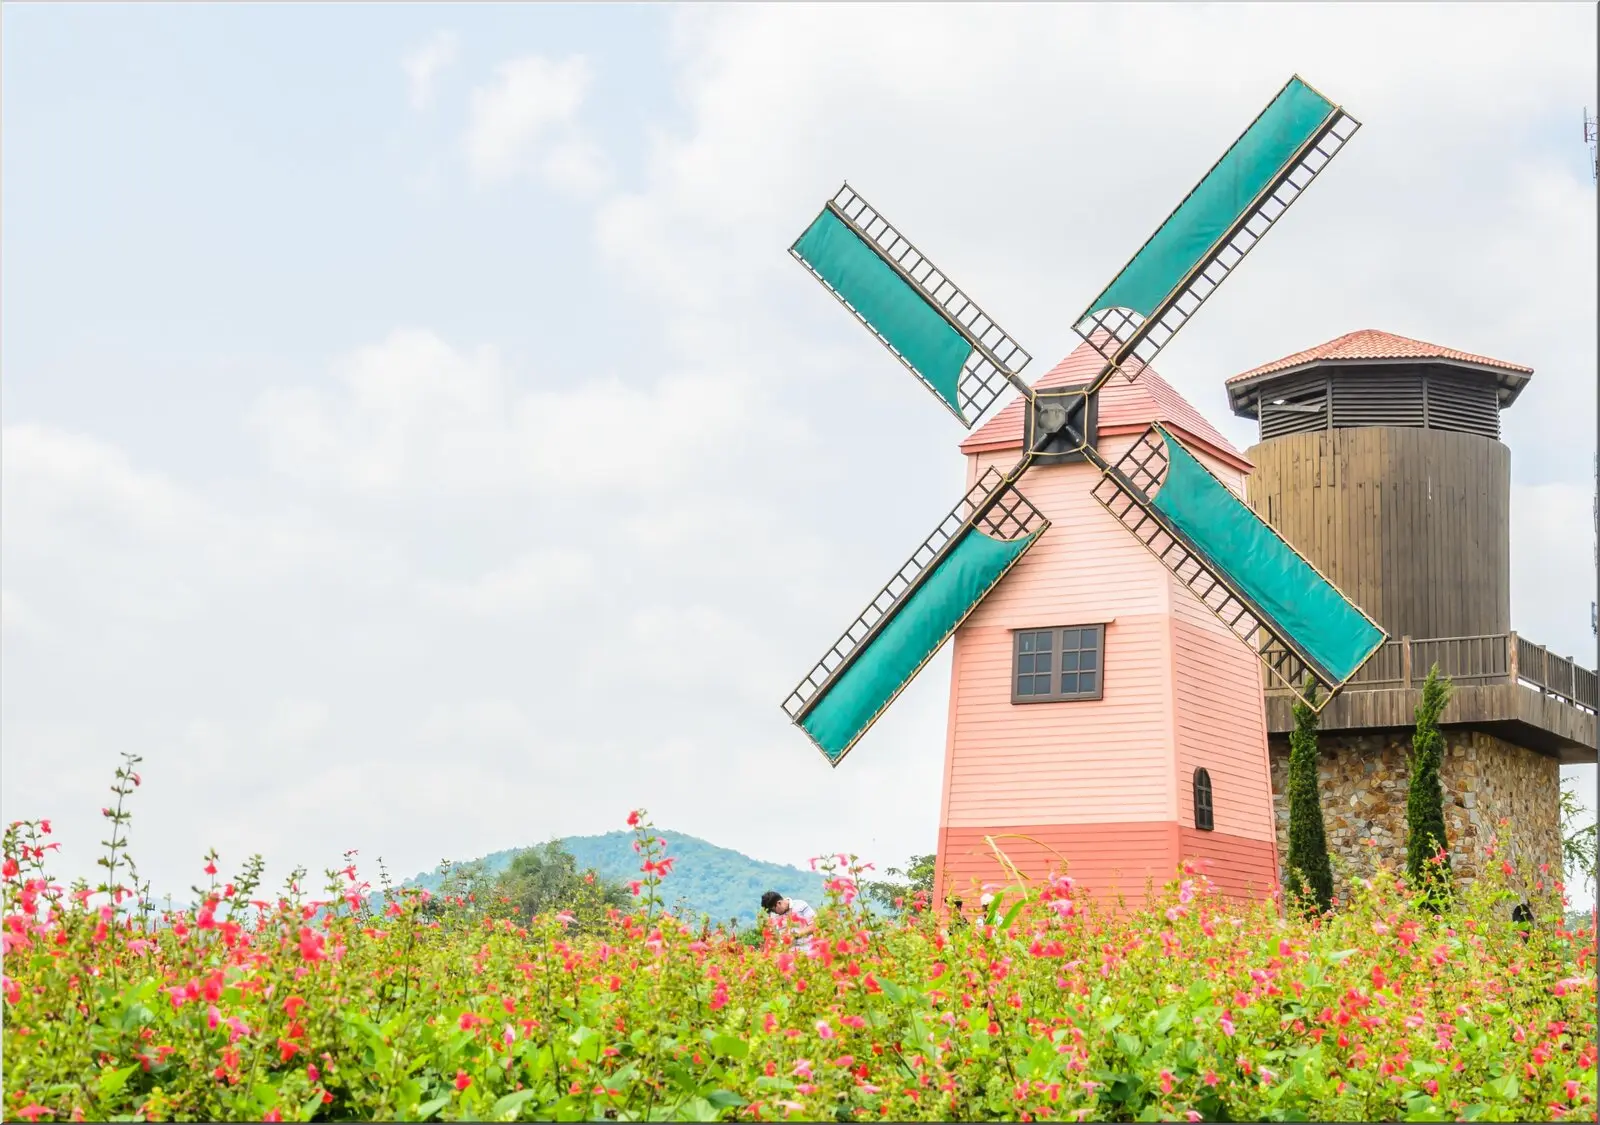 Windmühle als Motiv auf Din A6 Postkarte mit Blumenwiese